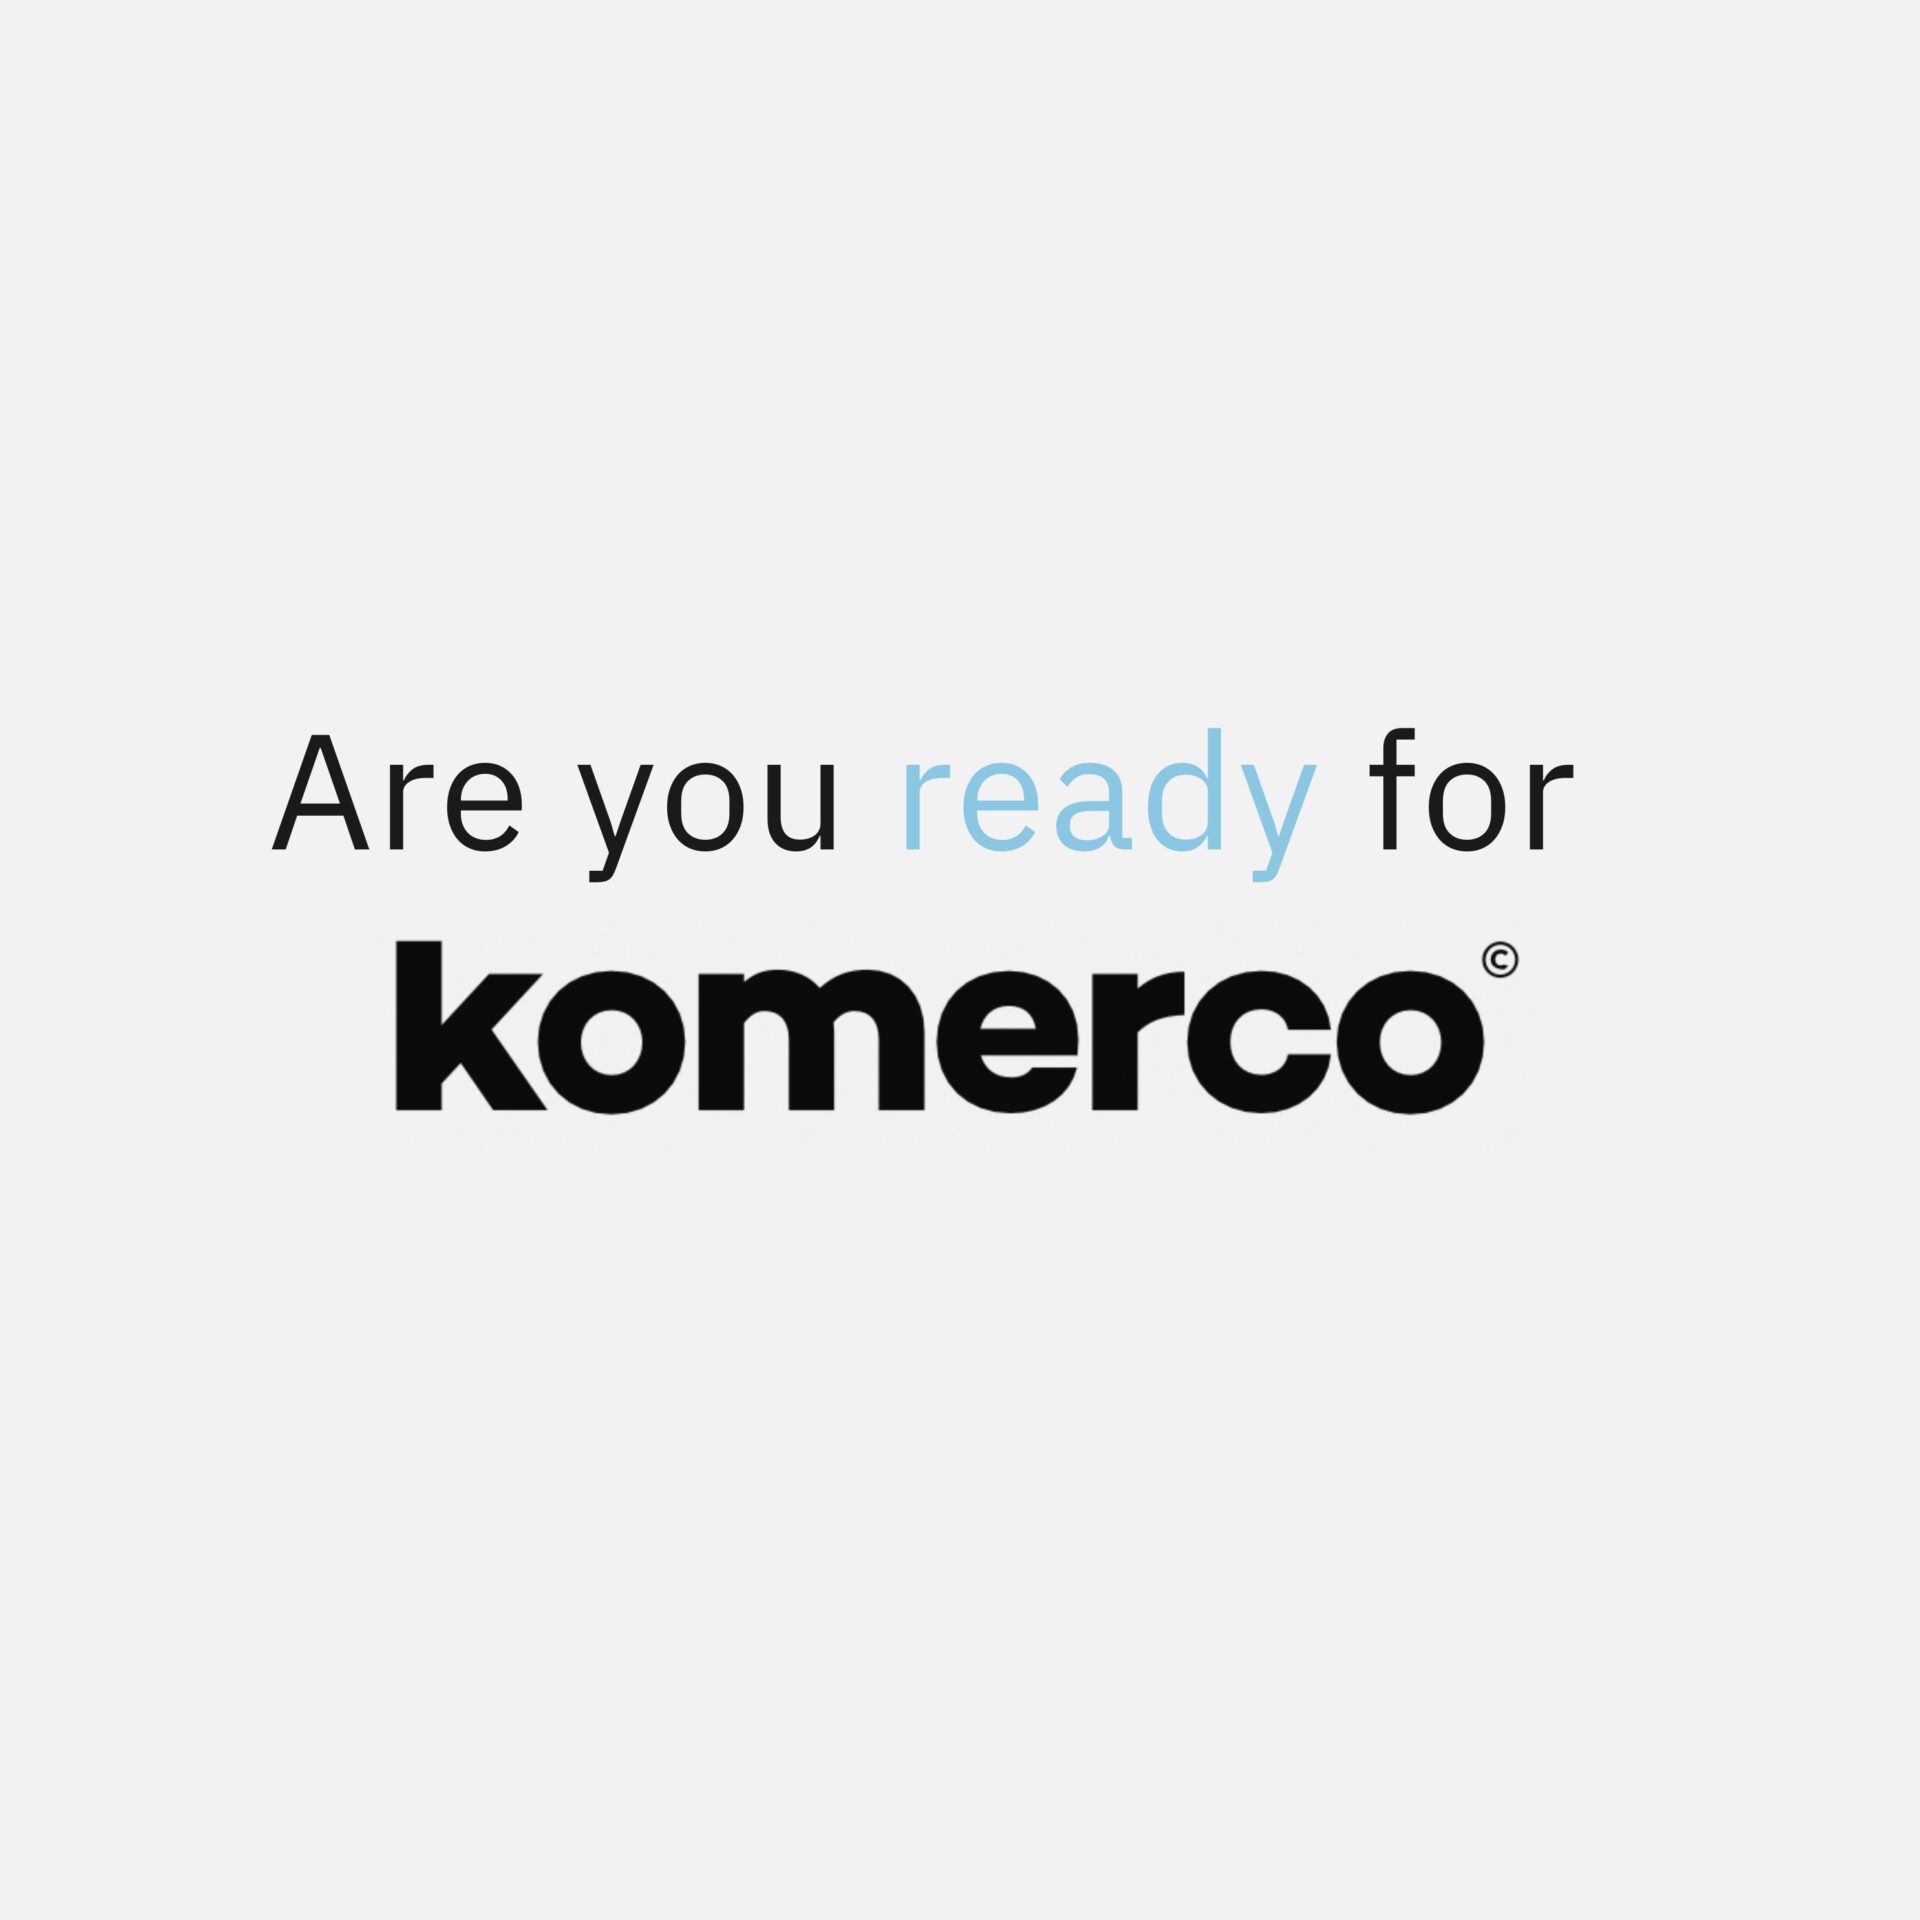 Komerco ready